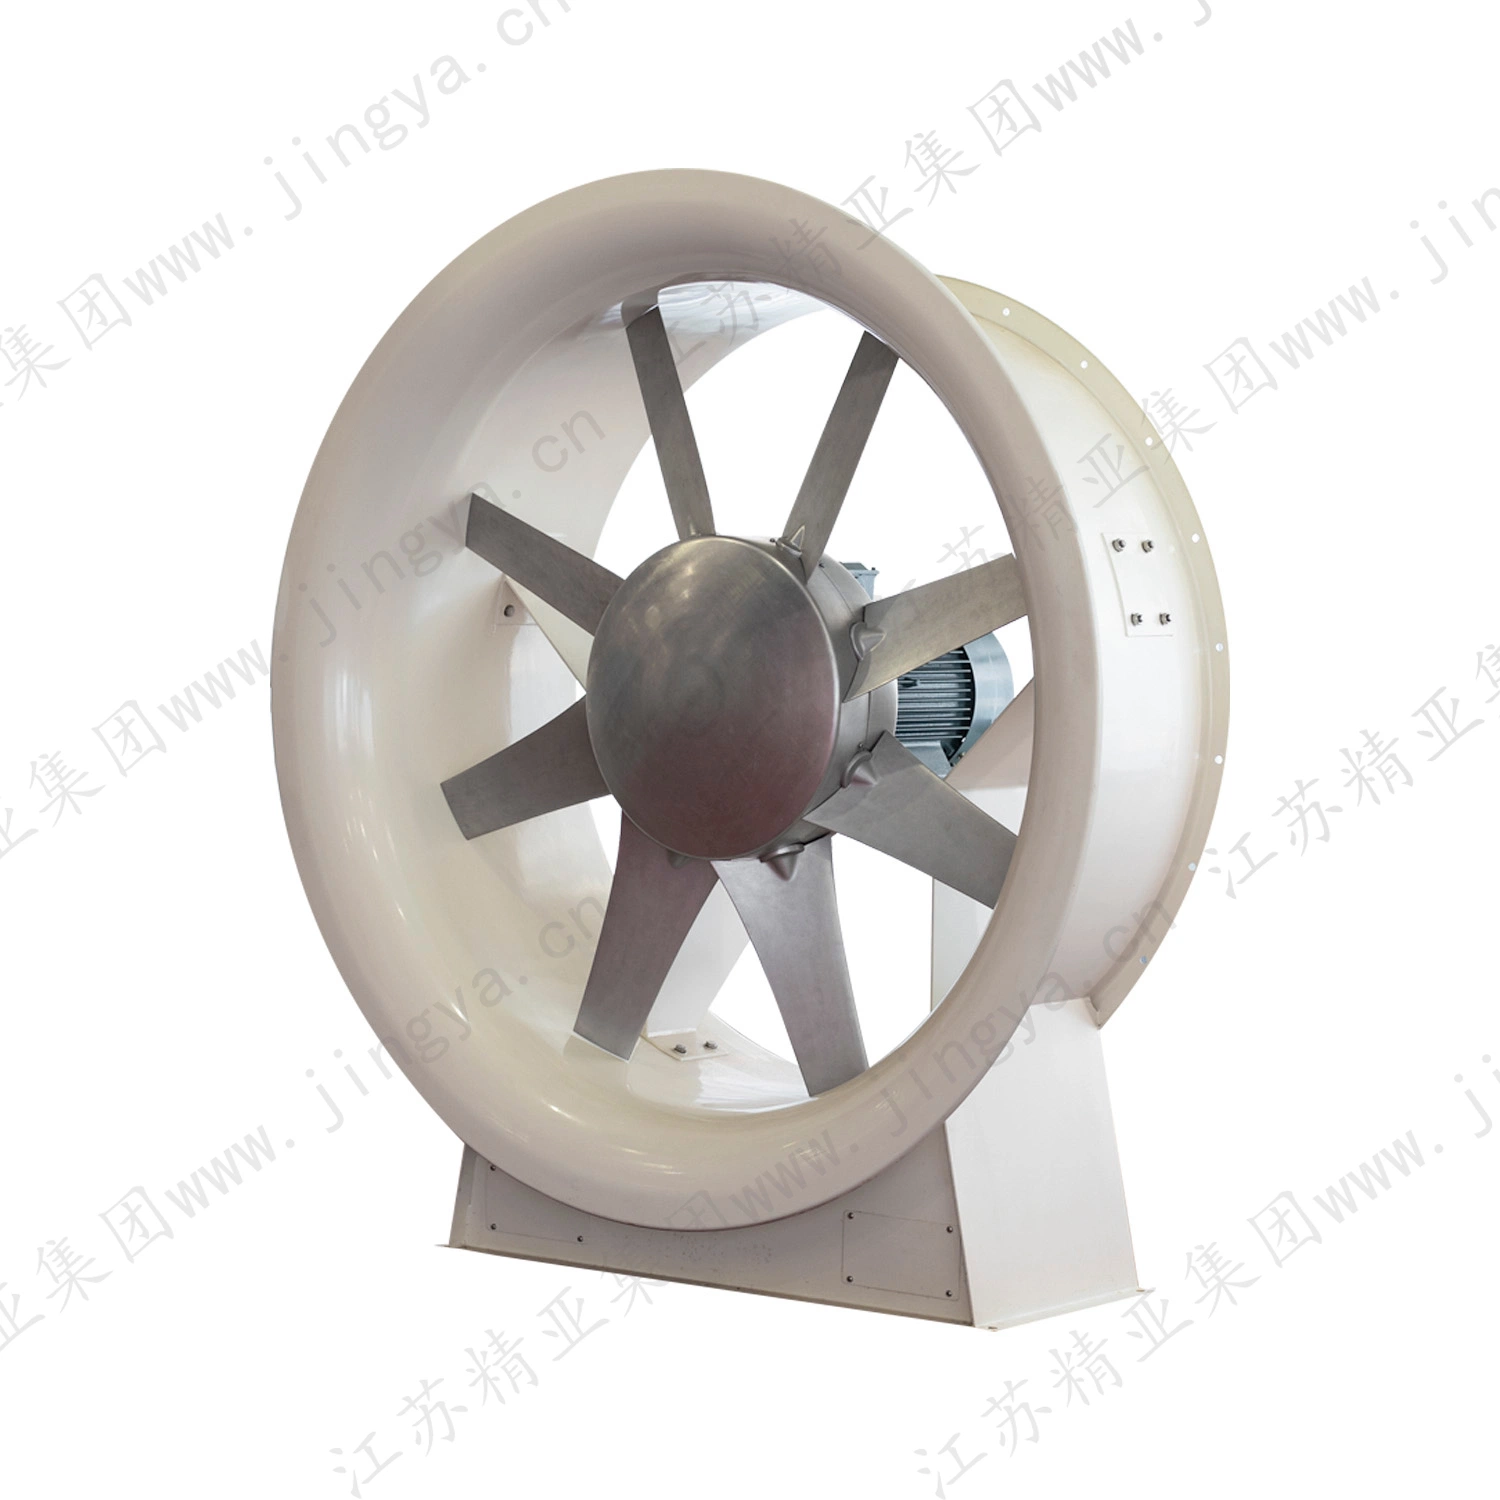 Axial Flow Fan als Textilmaschinen in der Textilindustrie